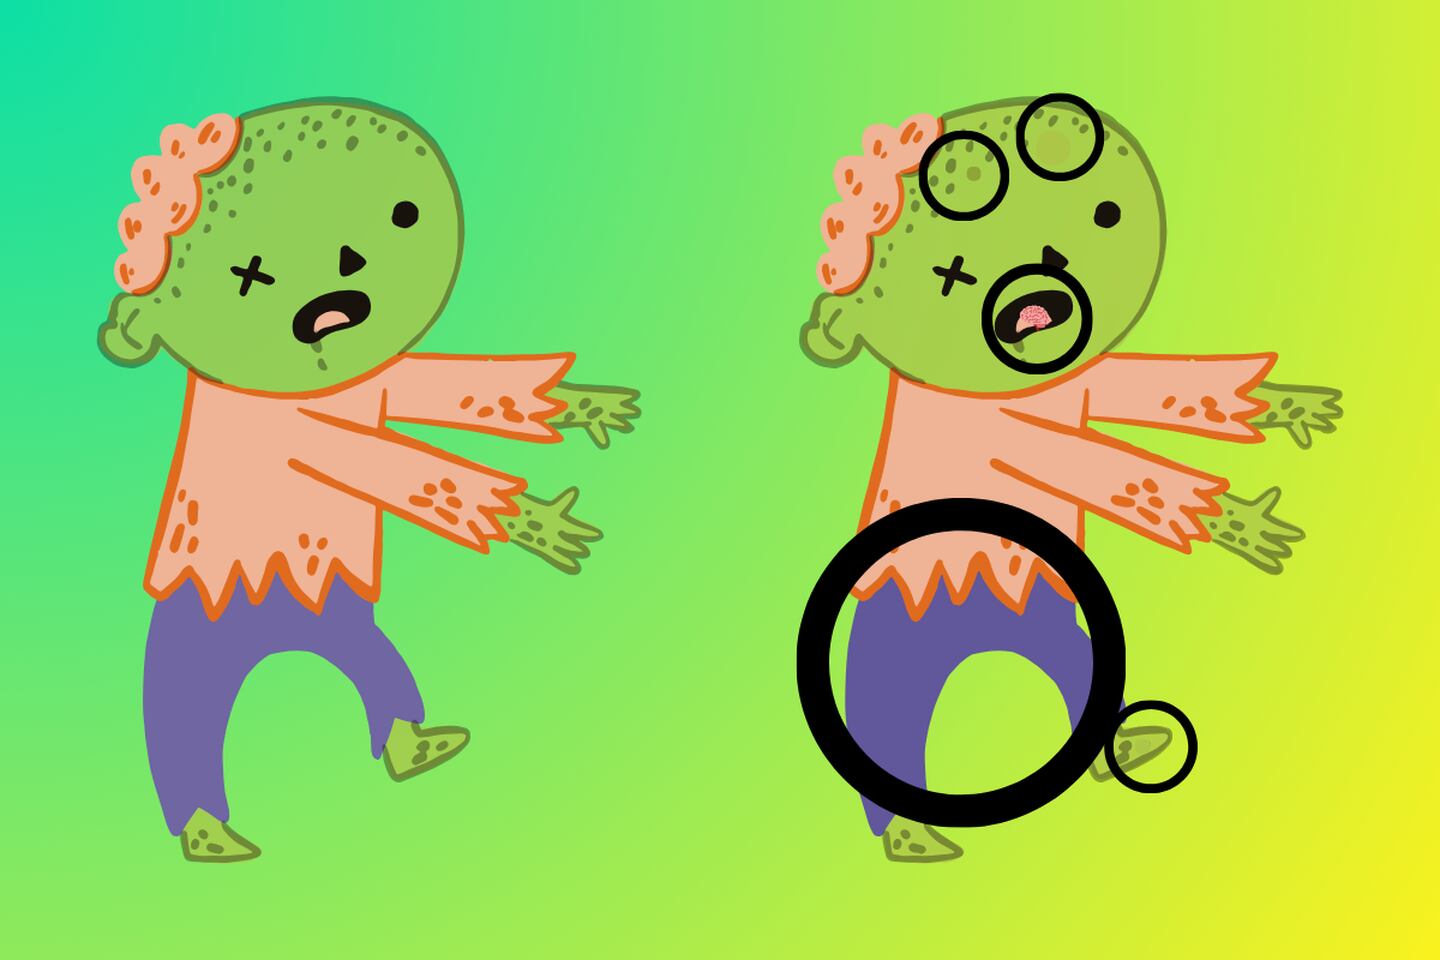 En este test visual hay dos zombies, pero uno tiene 5 cosas que lo diferencian del otro.